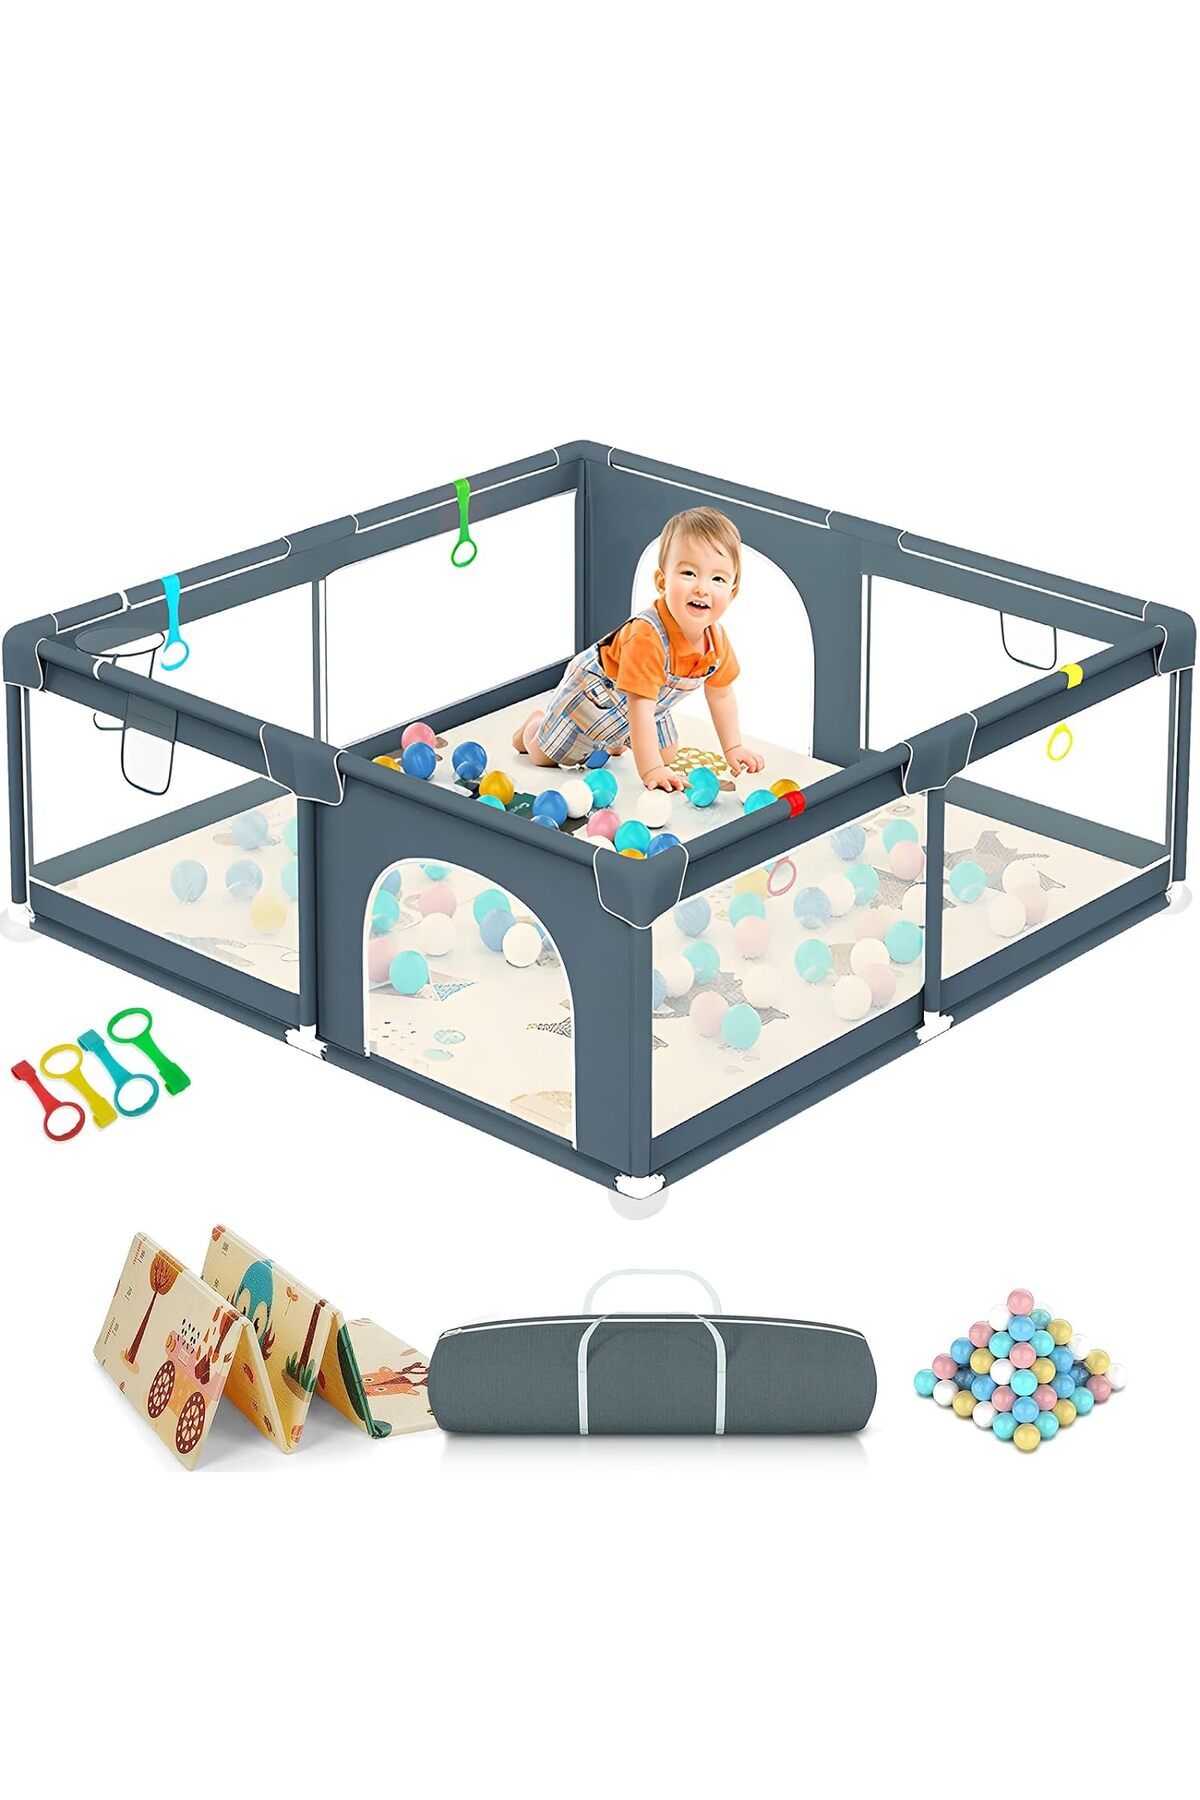 GOI store Yataklı Bebek Oyun Parkı: Güvenli, Dayanıklı ve Eğlenceli Oyun Alanı